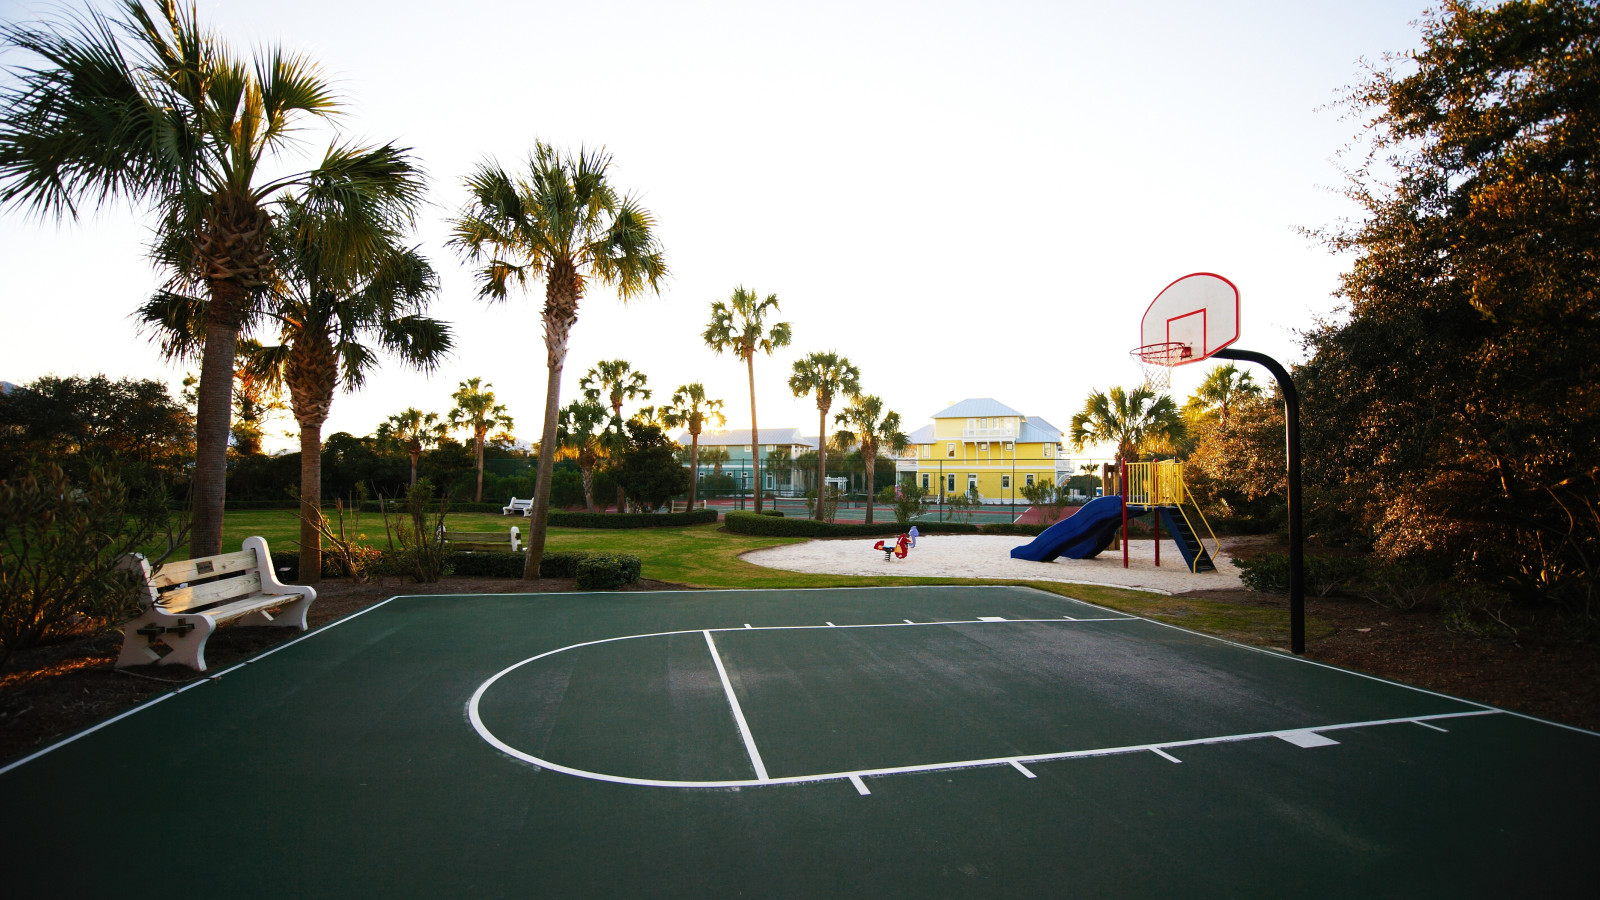 Beach House Basketball Court - HD Wallpaper 